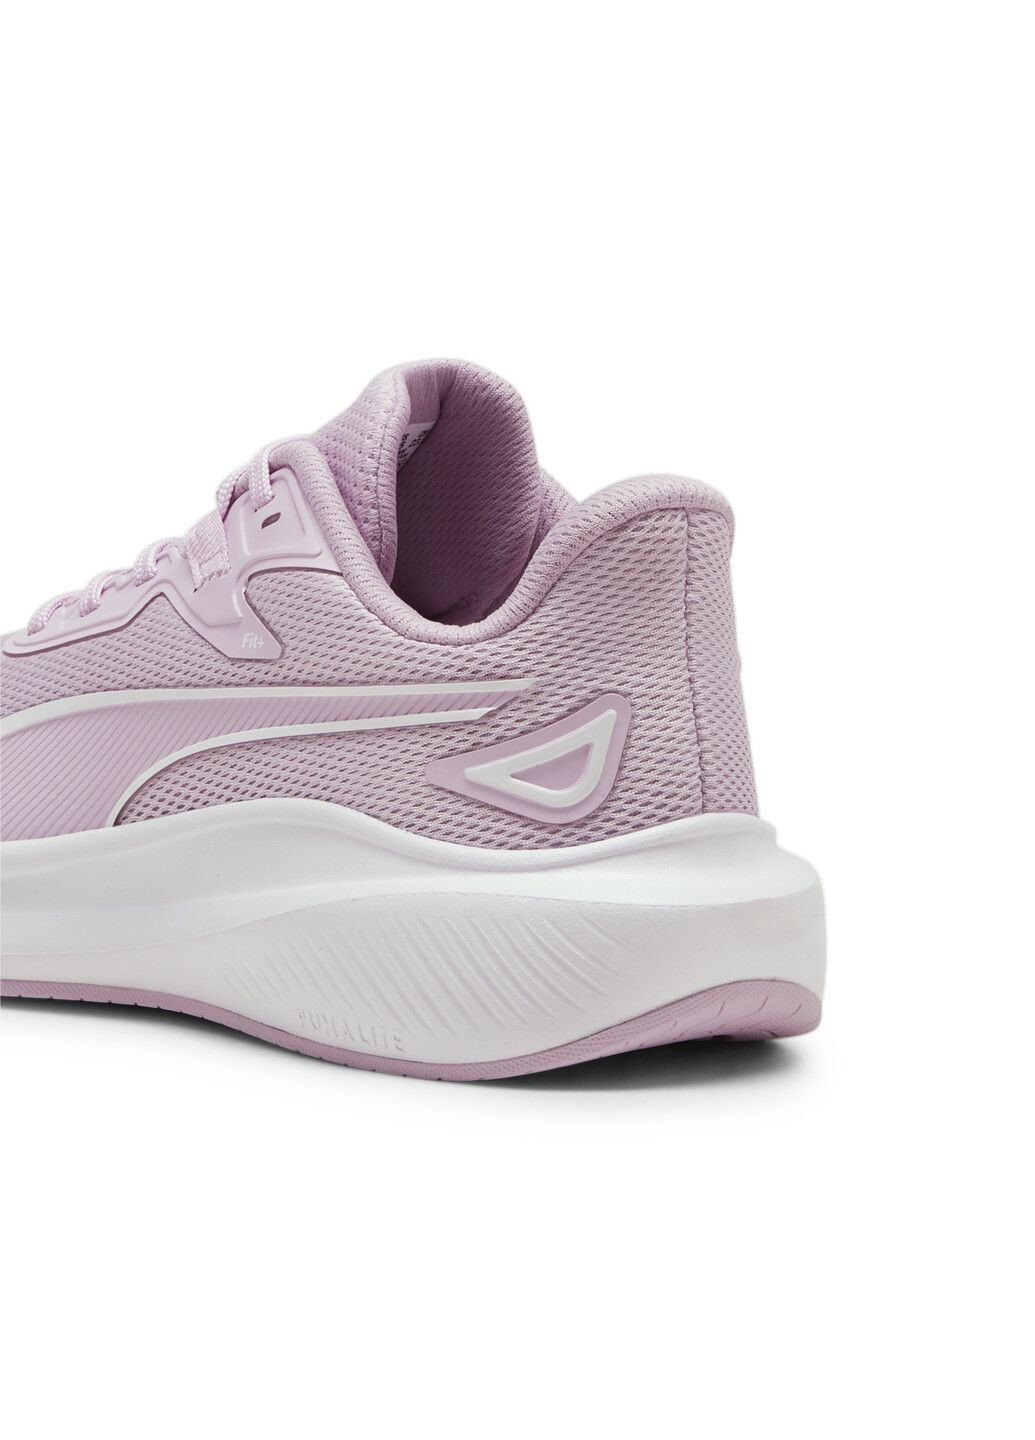 Пурпурные всесезонные кроссовки skyrocket lite running shoes Puma